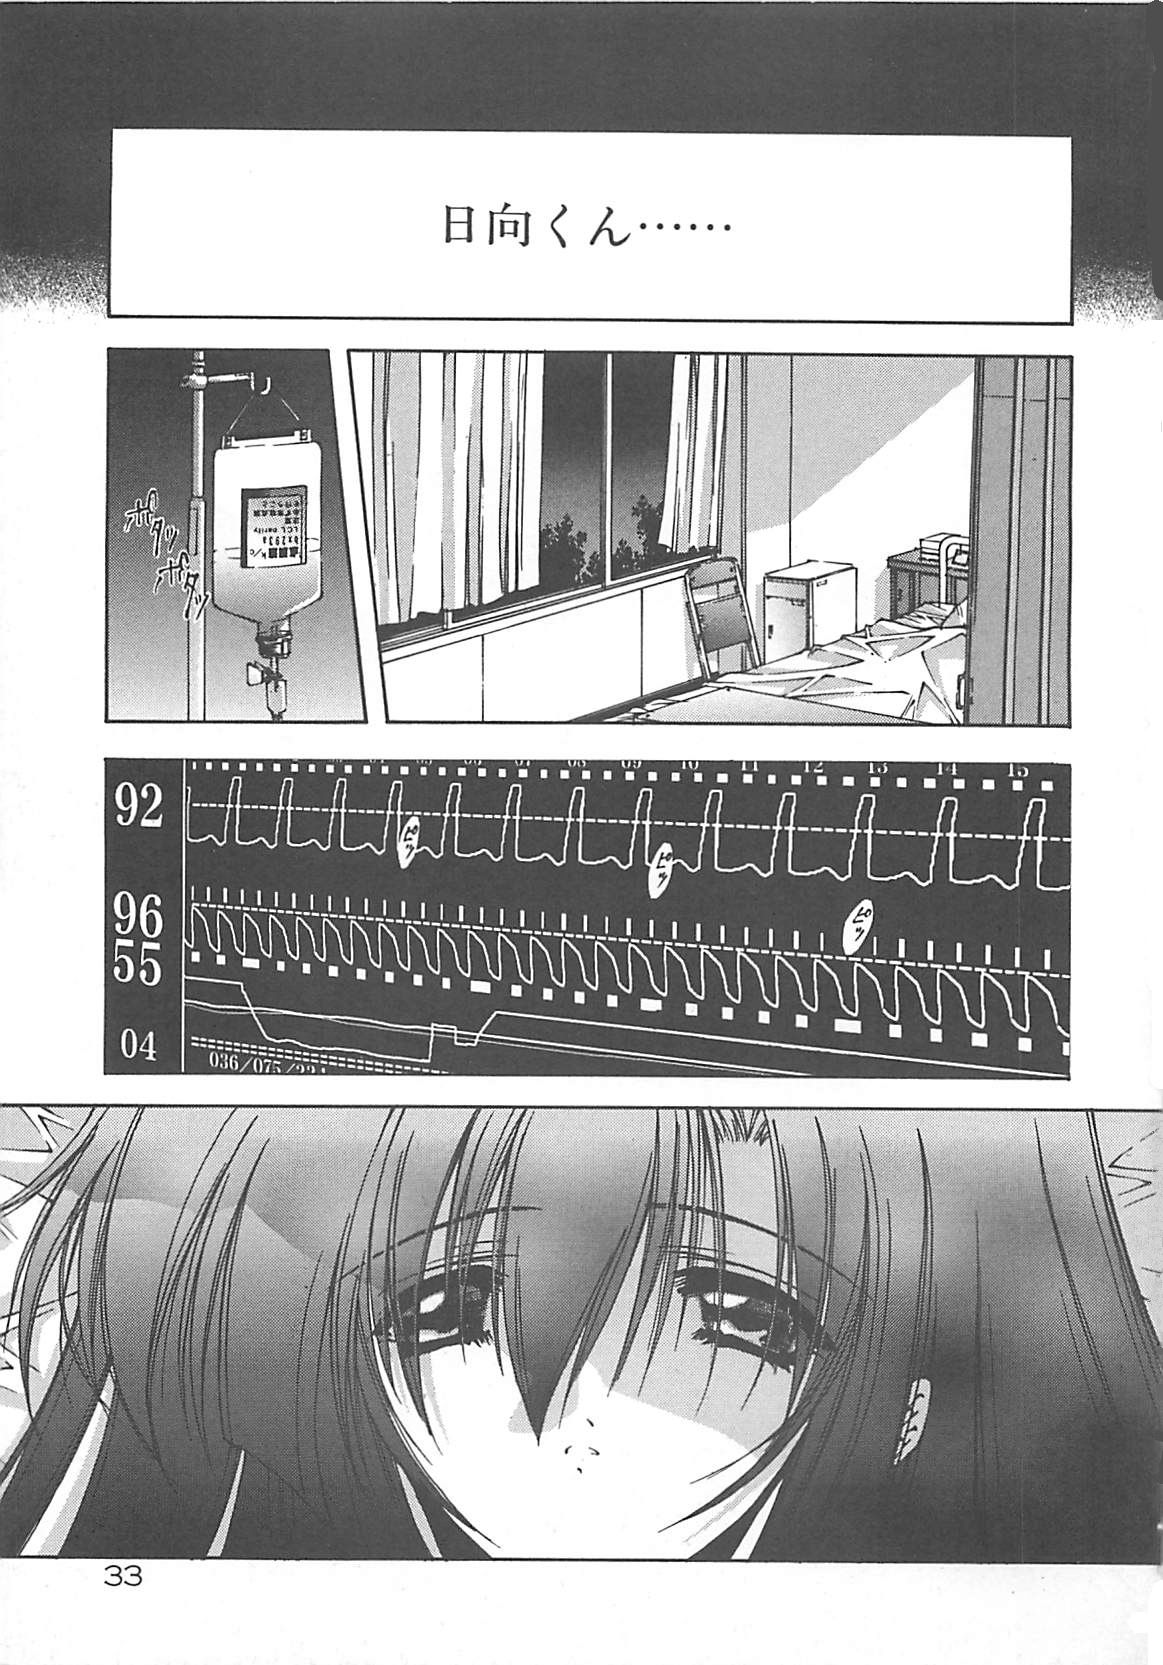 [Serizawa Katsumi] Kanon page 33 full